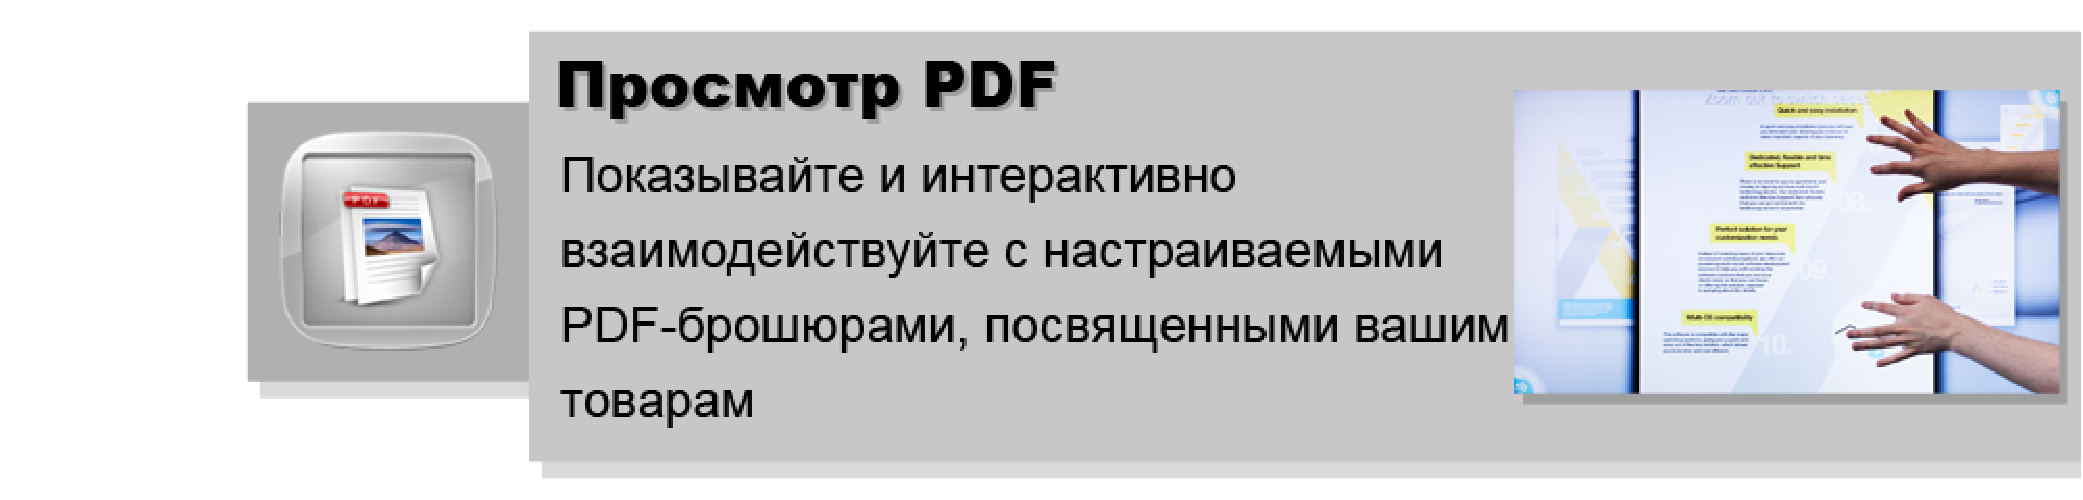 PDF для интерактивного стола